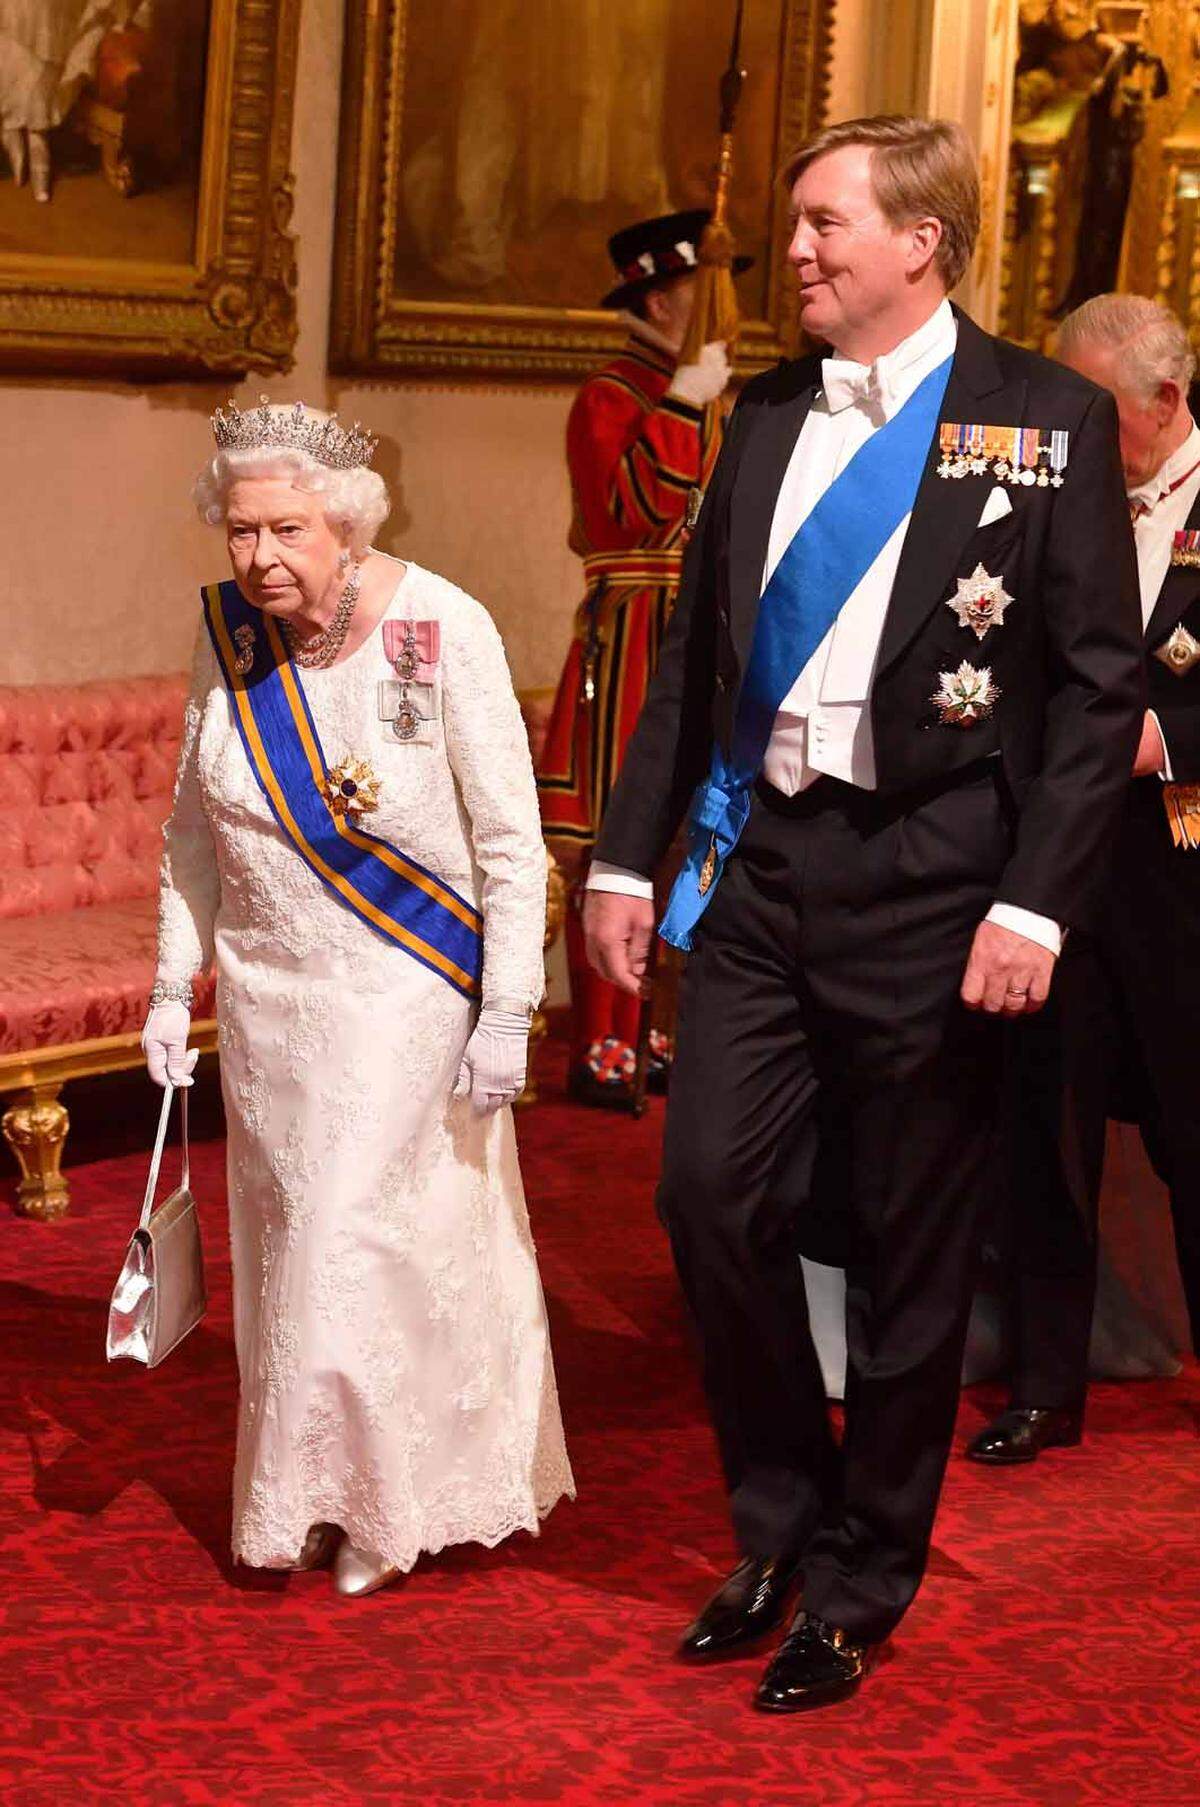 König Willem-Alexander hatte kurz vor dem Besuch im Gespräch mit britischen Journalisten gesagt, dass er sich wegen des Brexits Sorgen mache. Großbritannien will sich Ende März 2019 von der Europäischen Union (EU) trennen. Königin Elizabeth II. trat gemeinsam mit König Willem-Alexander ein.